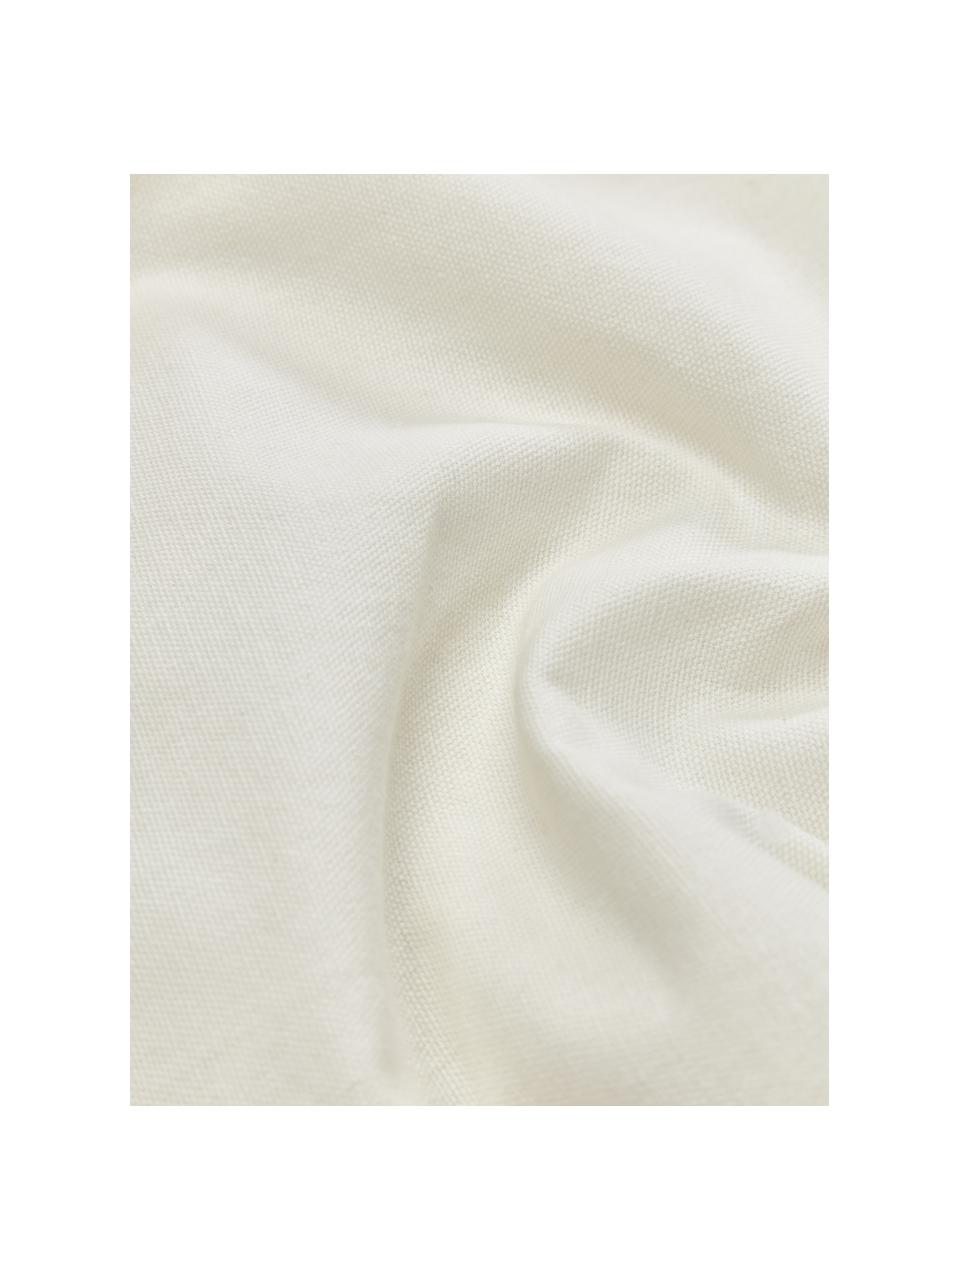 Bestickte Baumwoll-Kissenhülle Bardia in Beige, Bezug: 100 % Bio-Baumwolle, Beige, Cremeweiß, B 45 x L 45 cm